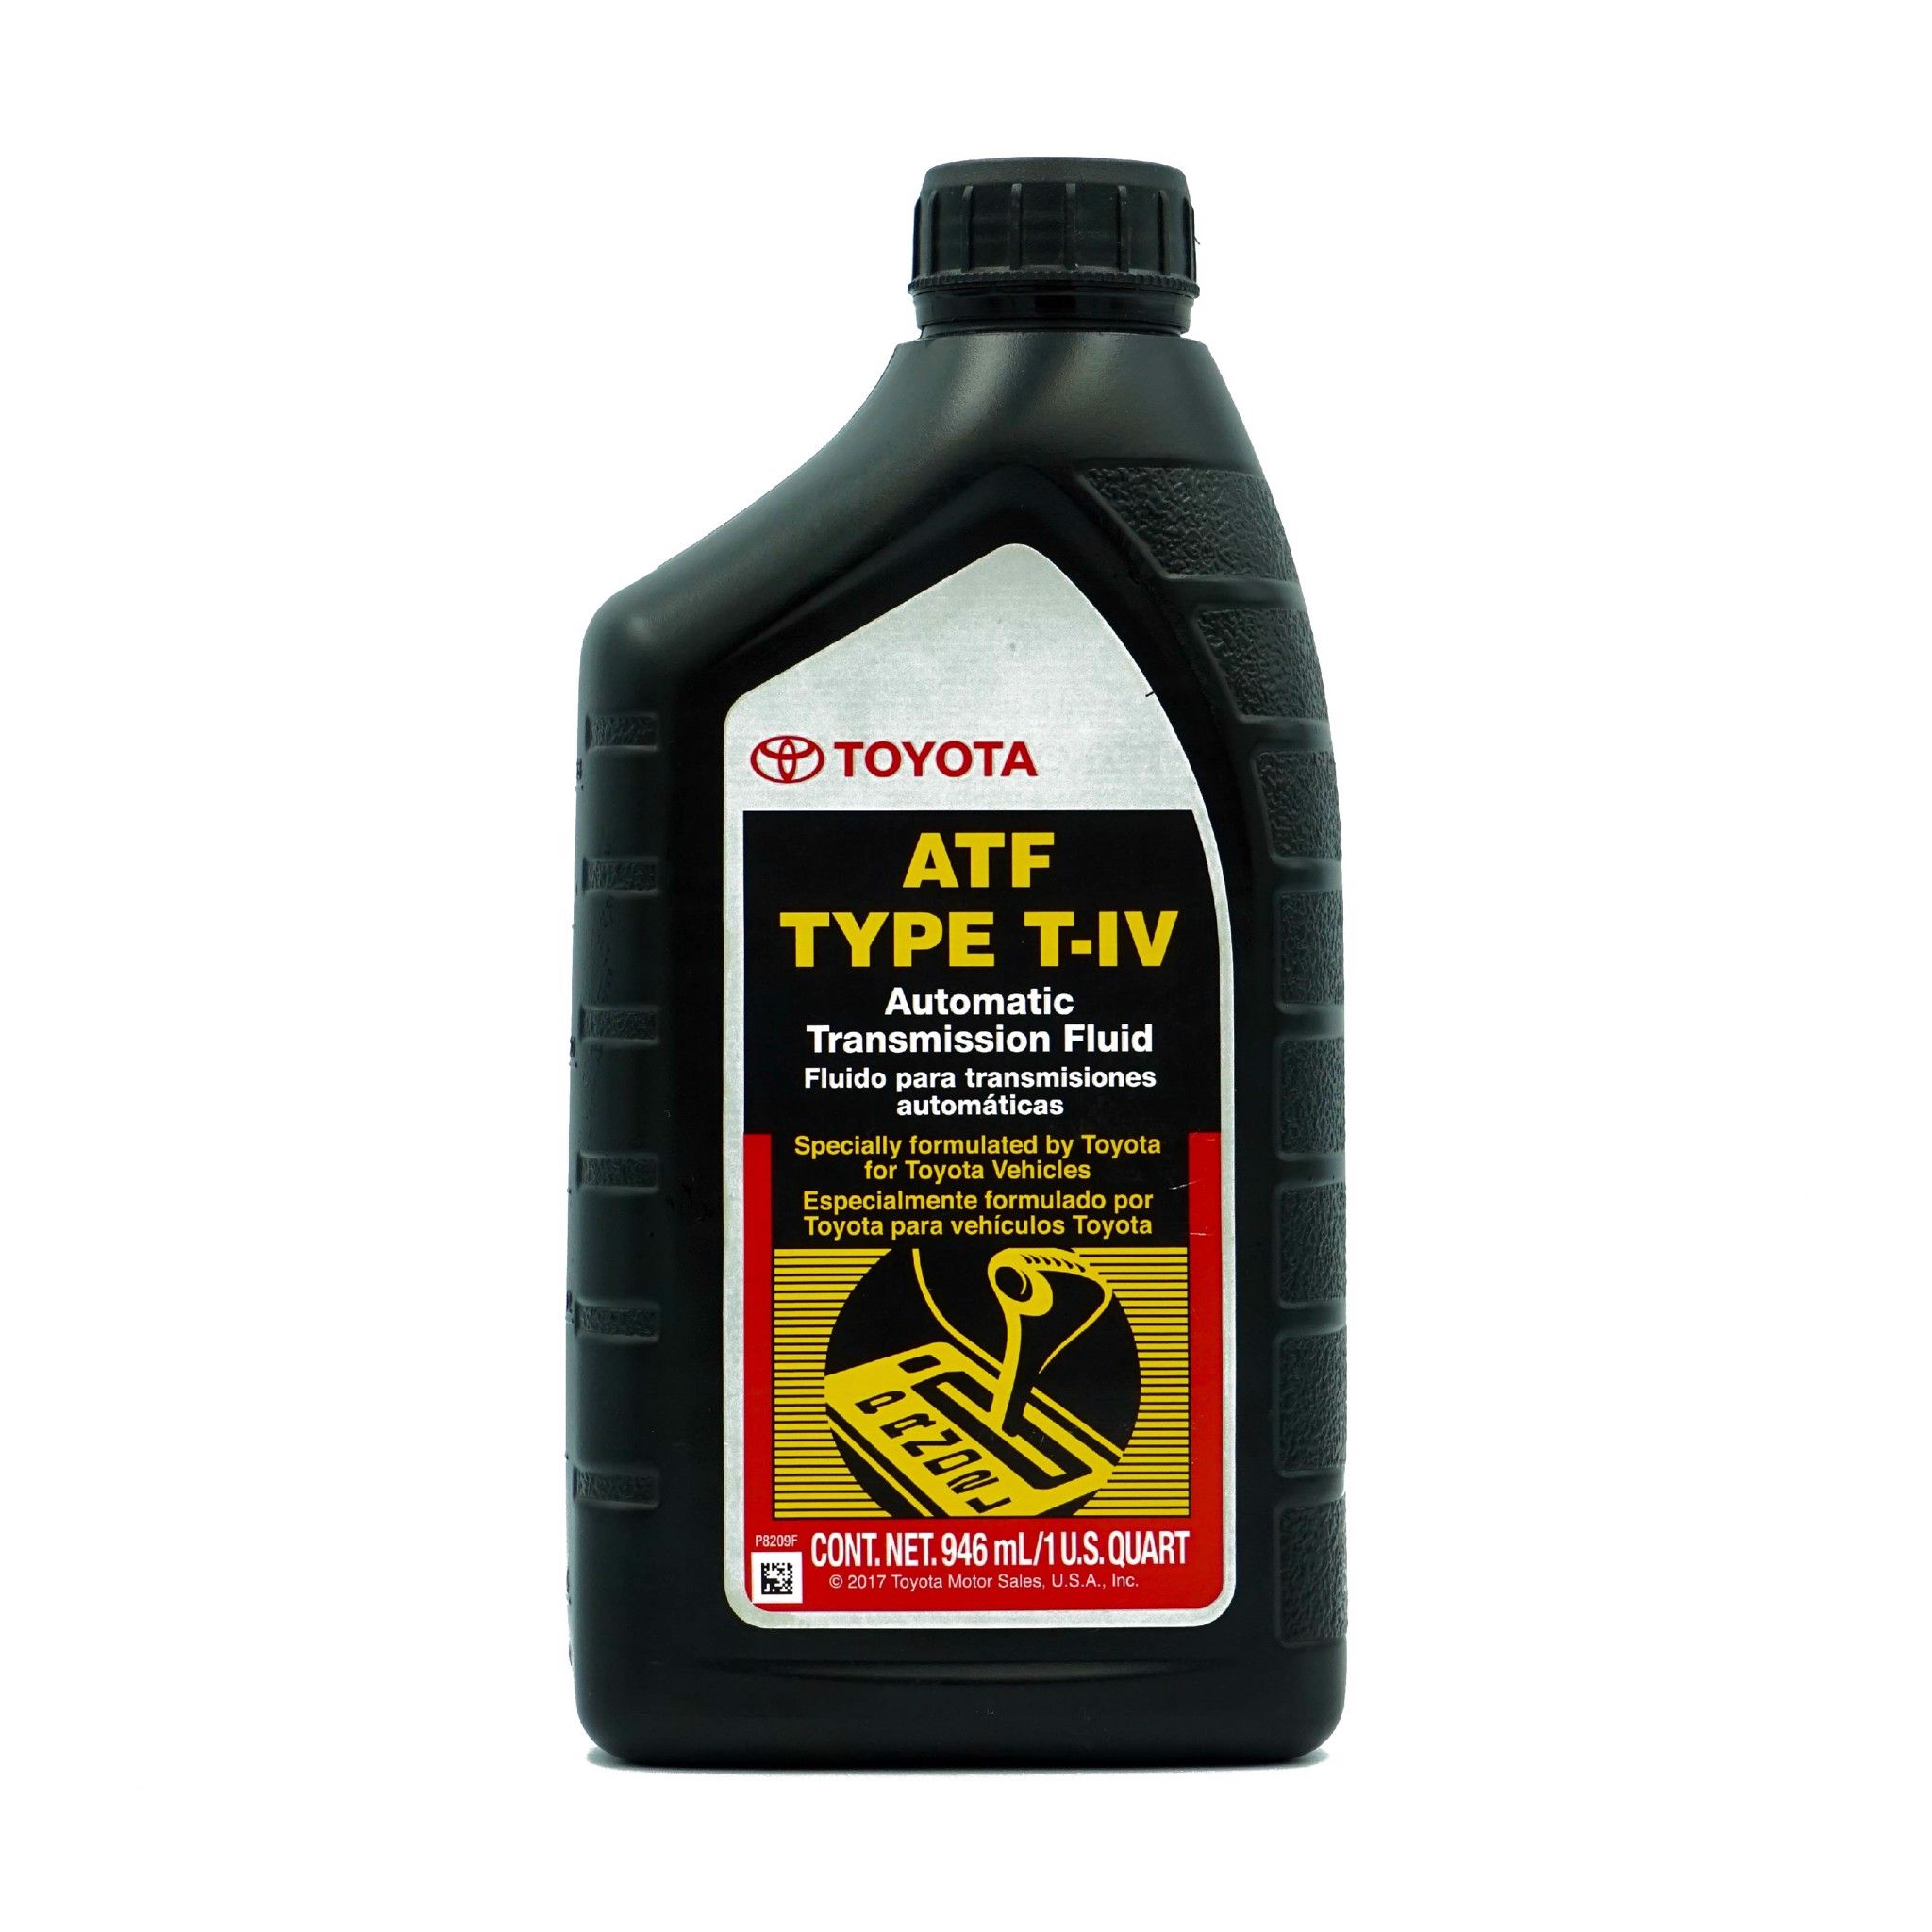  Dầu hộp số tổng hợp toàn phần Toyota ATF Type T-IV 